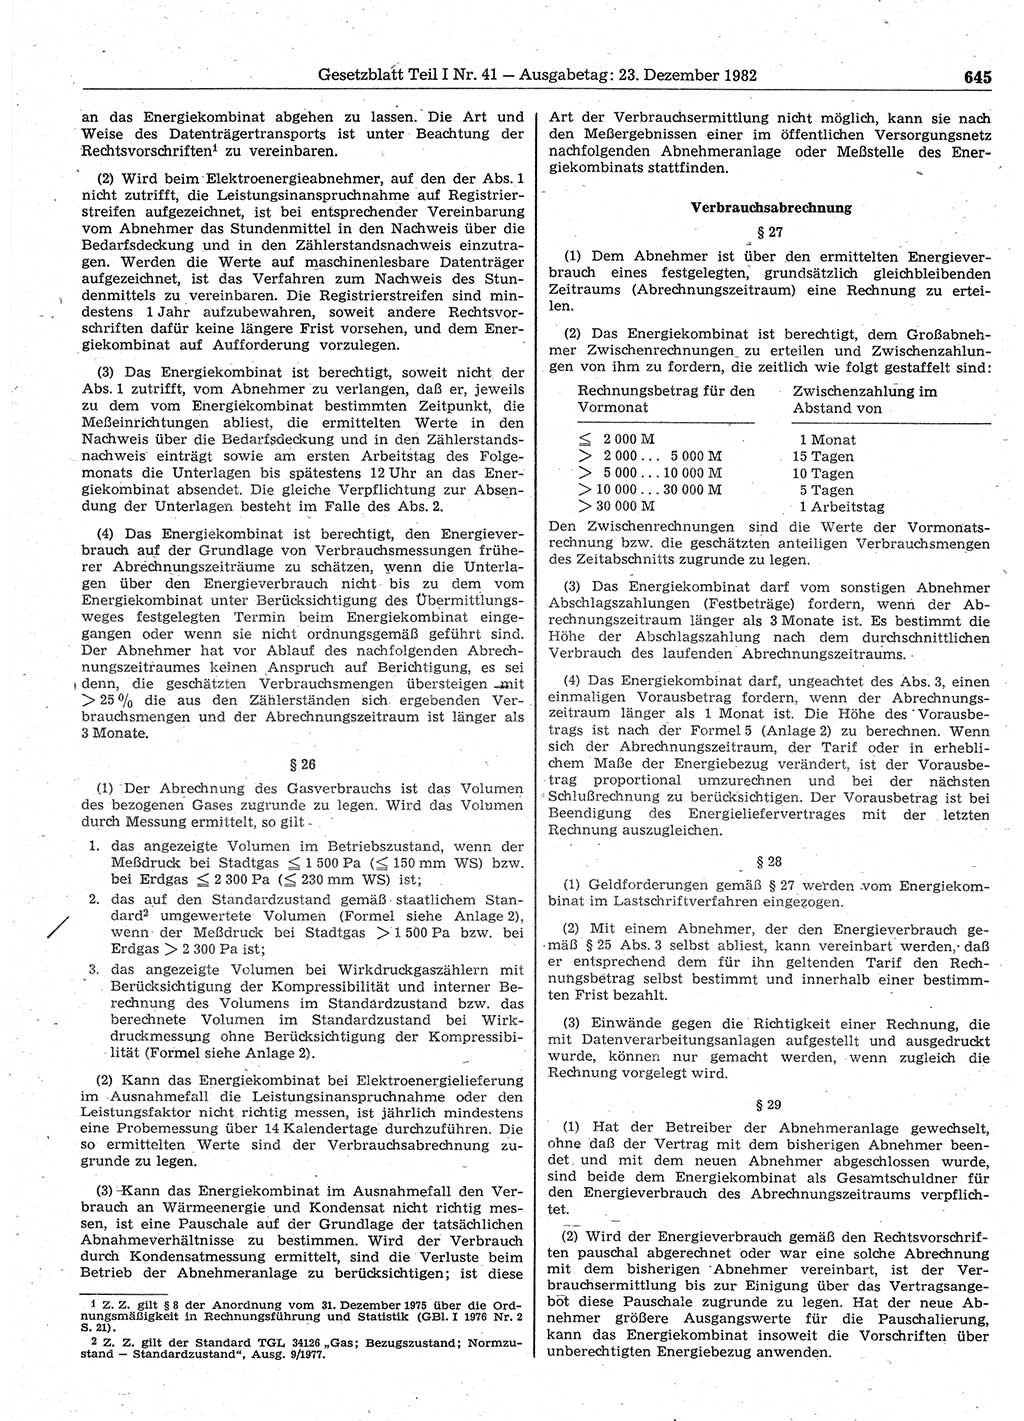 Gesetzblatt (GBl.) der Deutschen Demokratischen Republik (DDR) Teil Ⅰ 1982, Seite 645 (GBl. DDR Ⅰ 1982, S. 645)